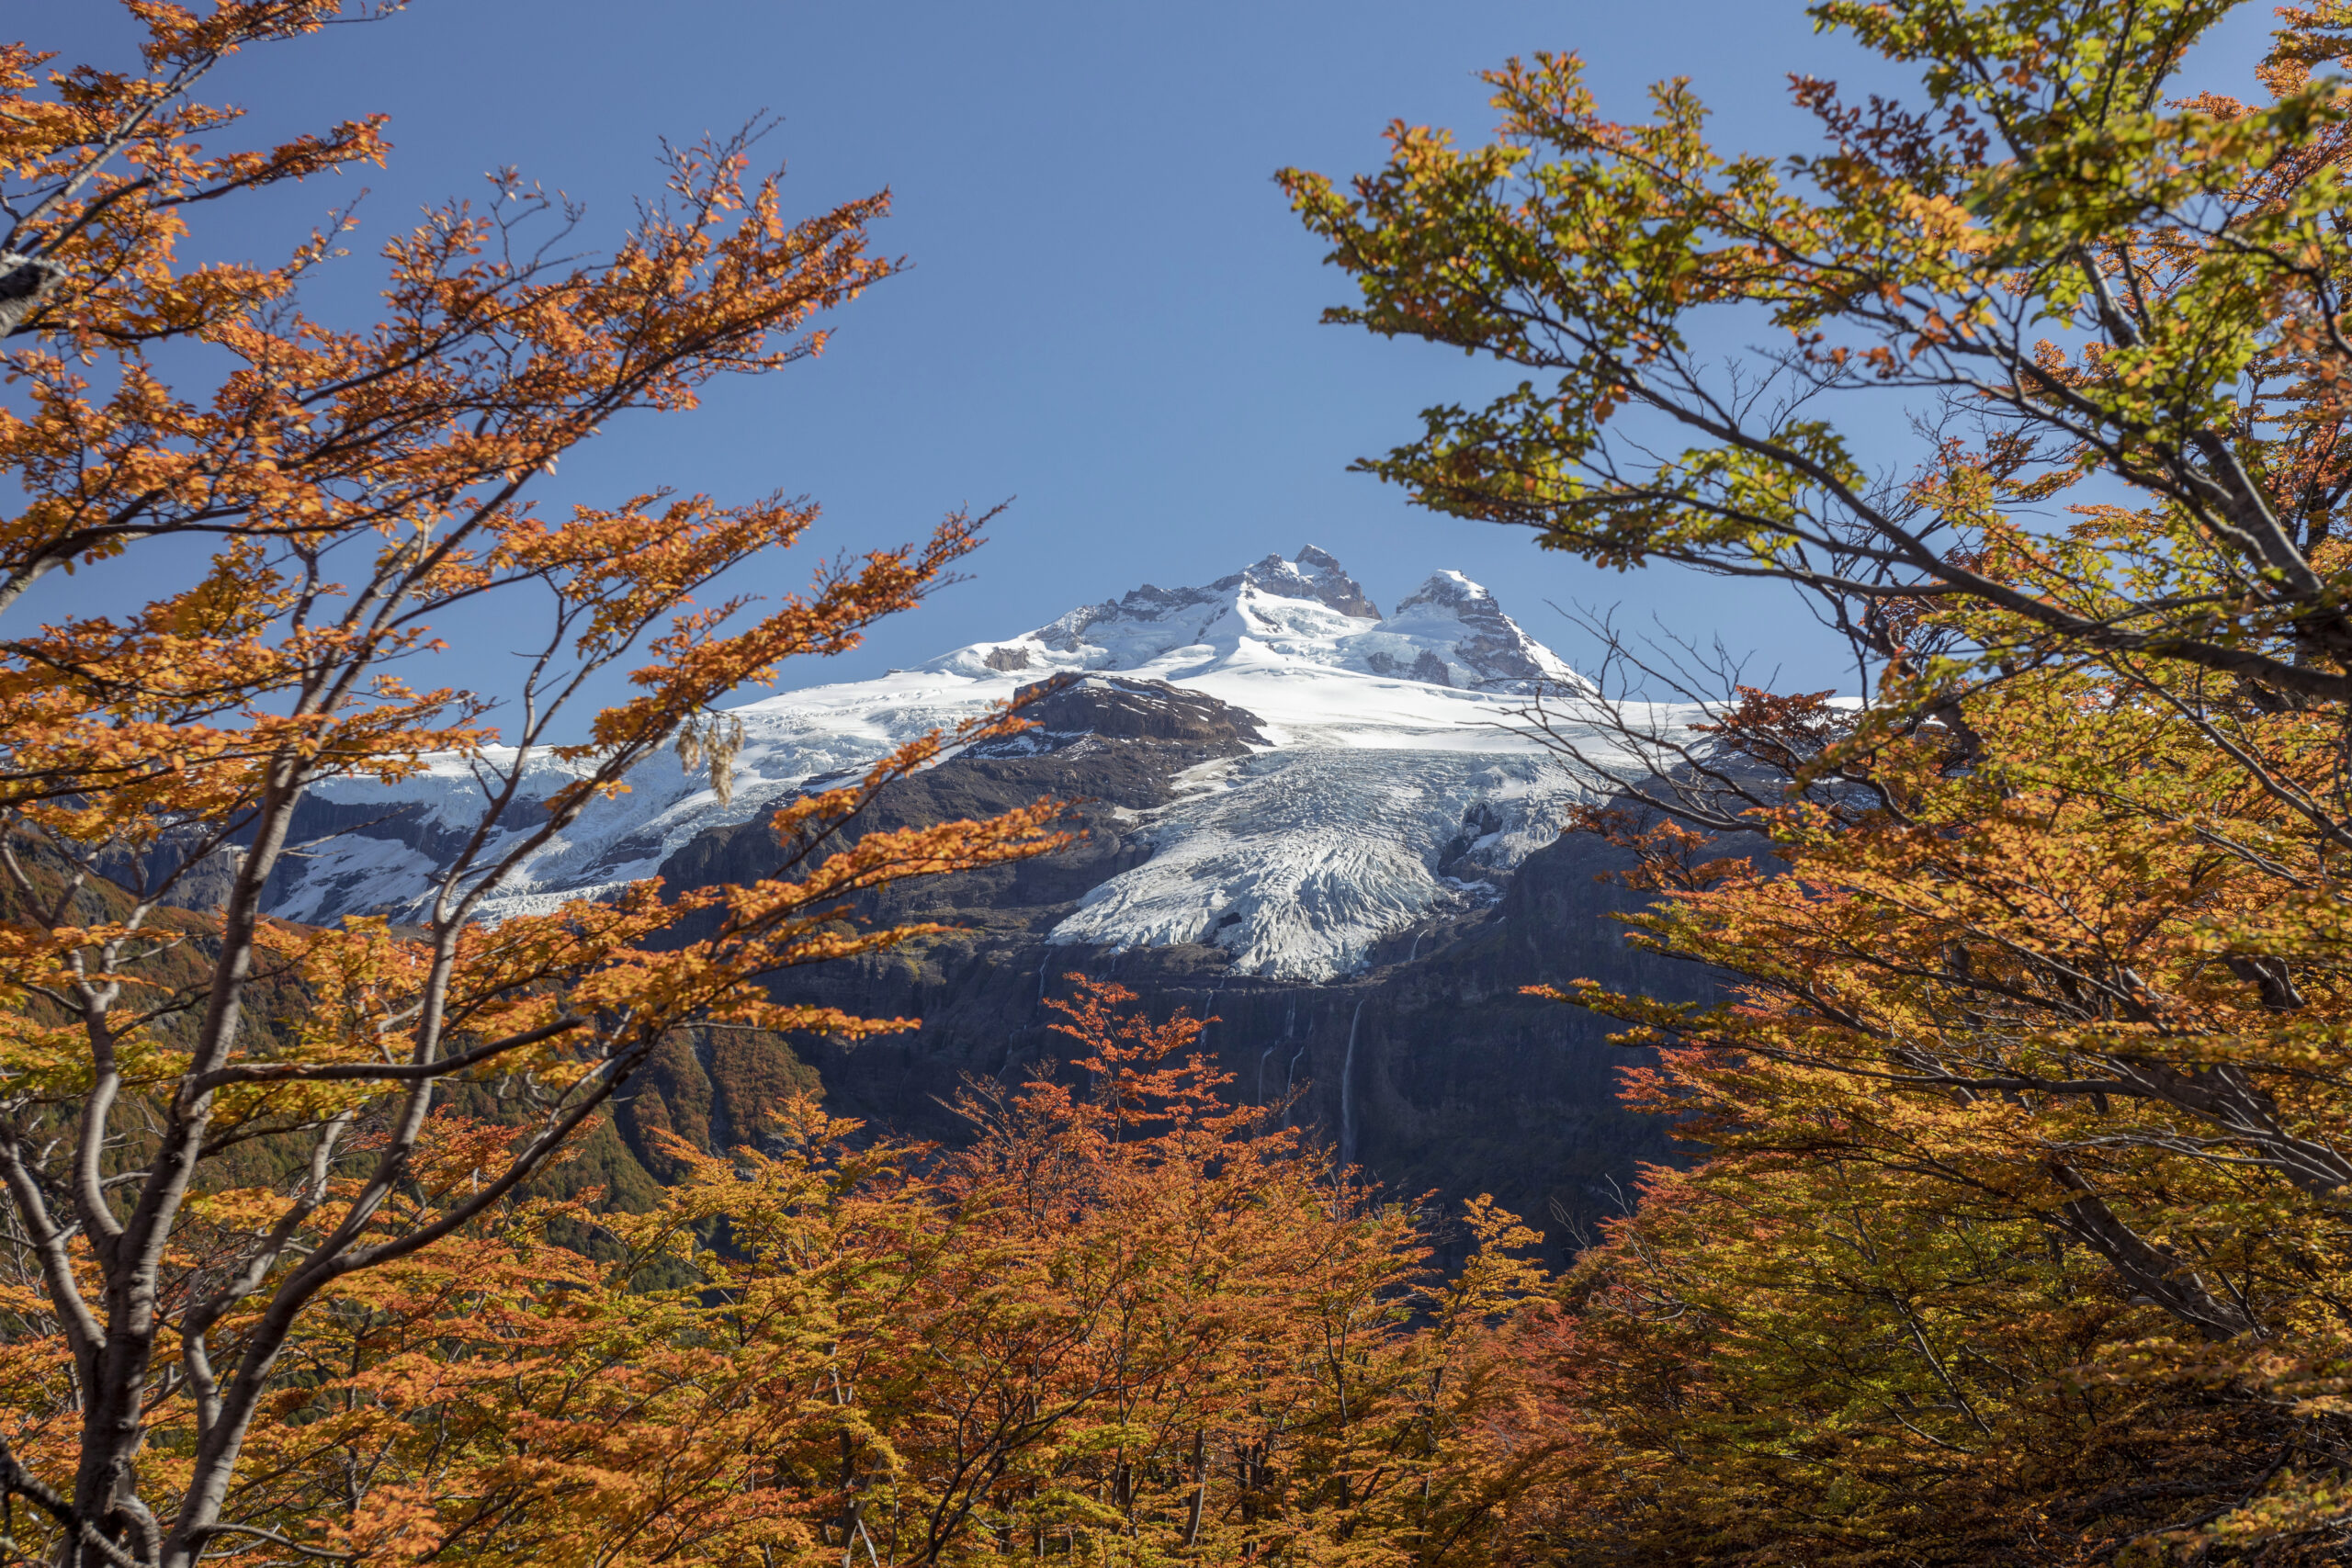 Llegaron los Barichecks, para viajar con descuento a Bariloche en otoño